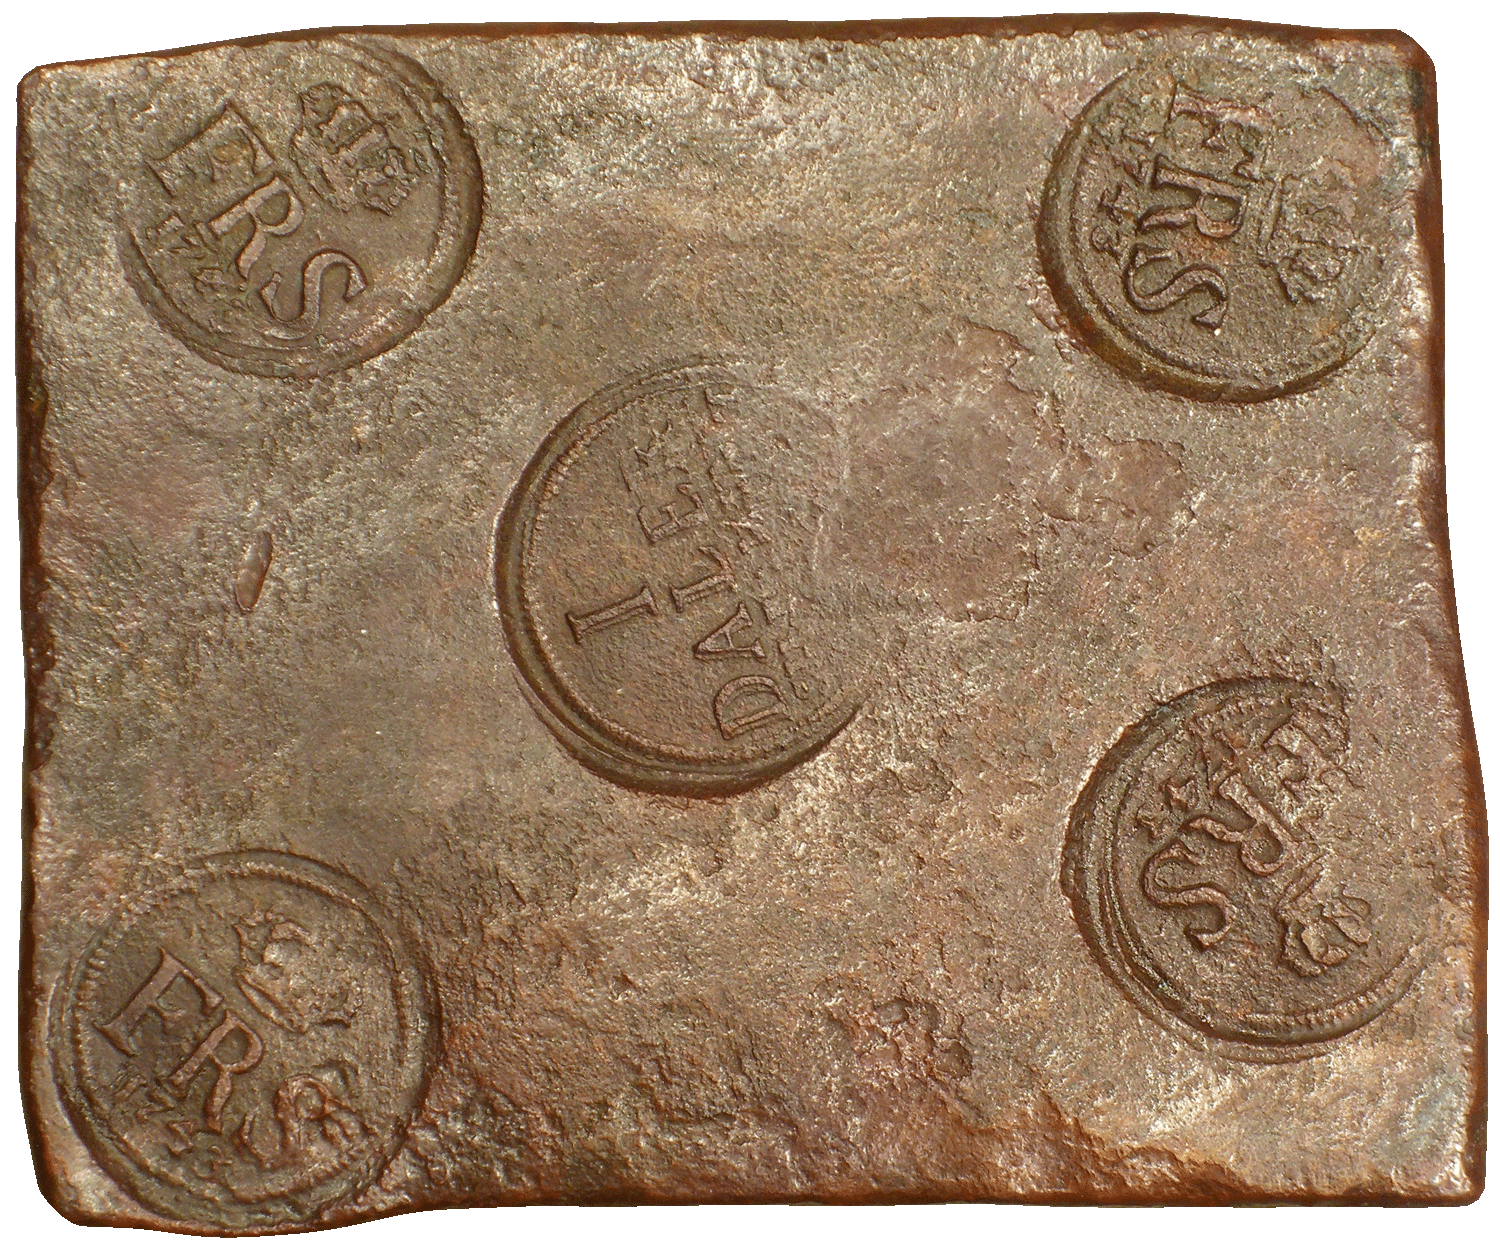 Königreich Schweden, Friedrich I., Kupferplatte zu 1 Daler Silvermint 1743 (obverse)